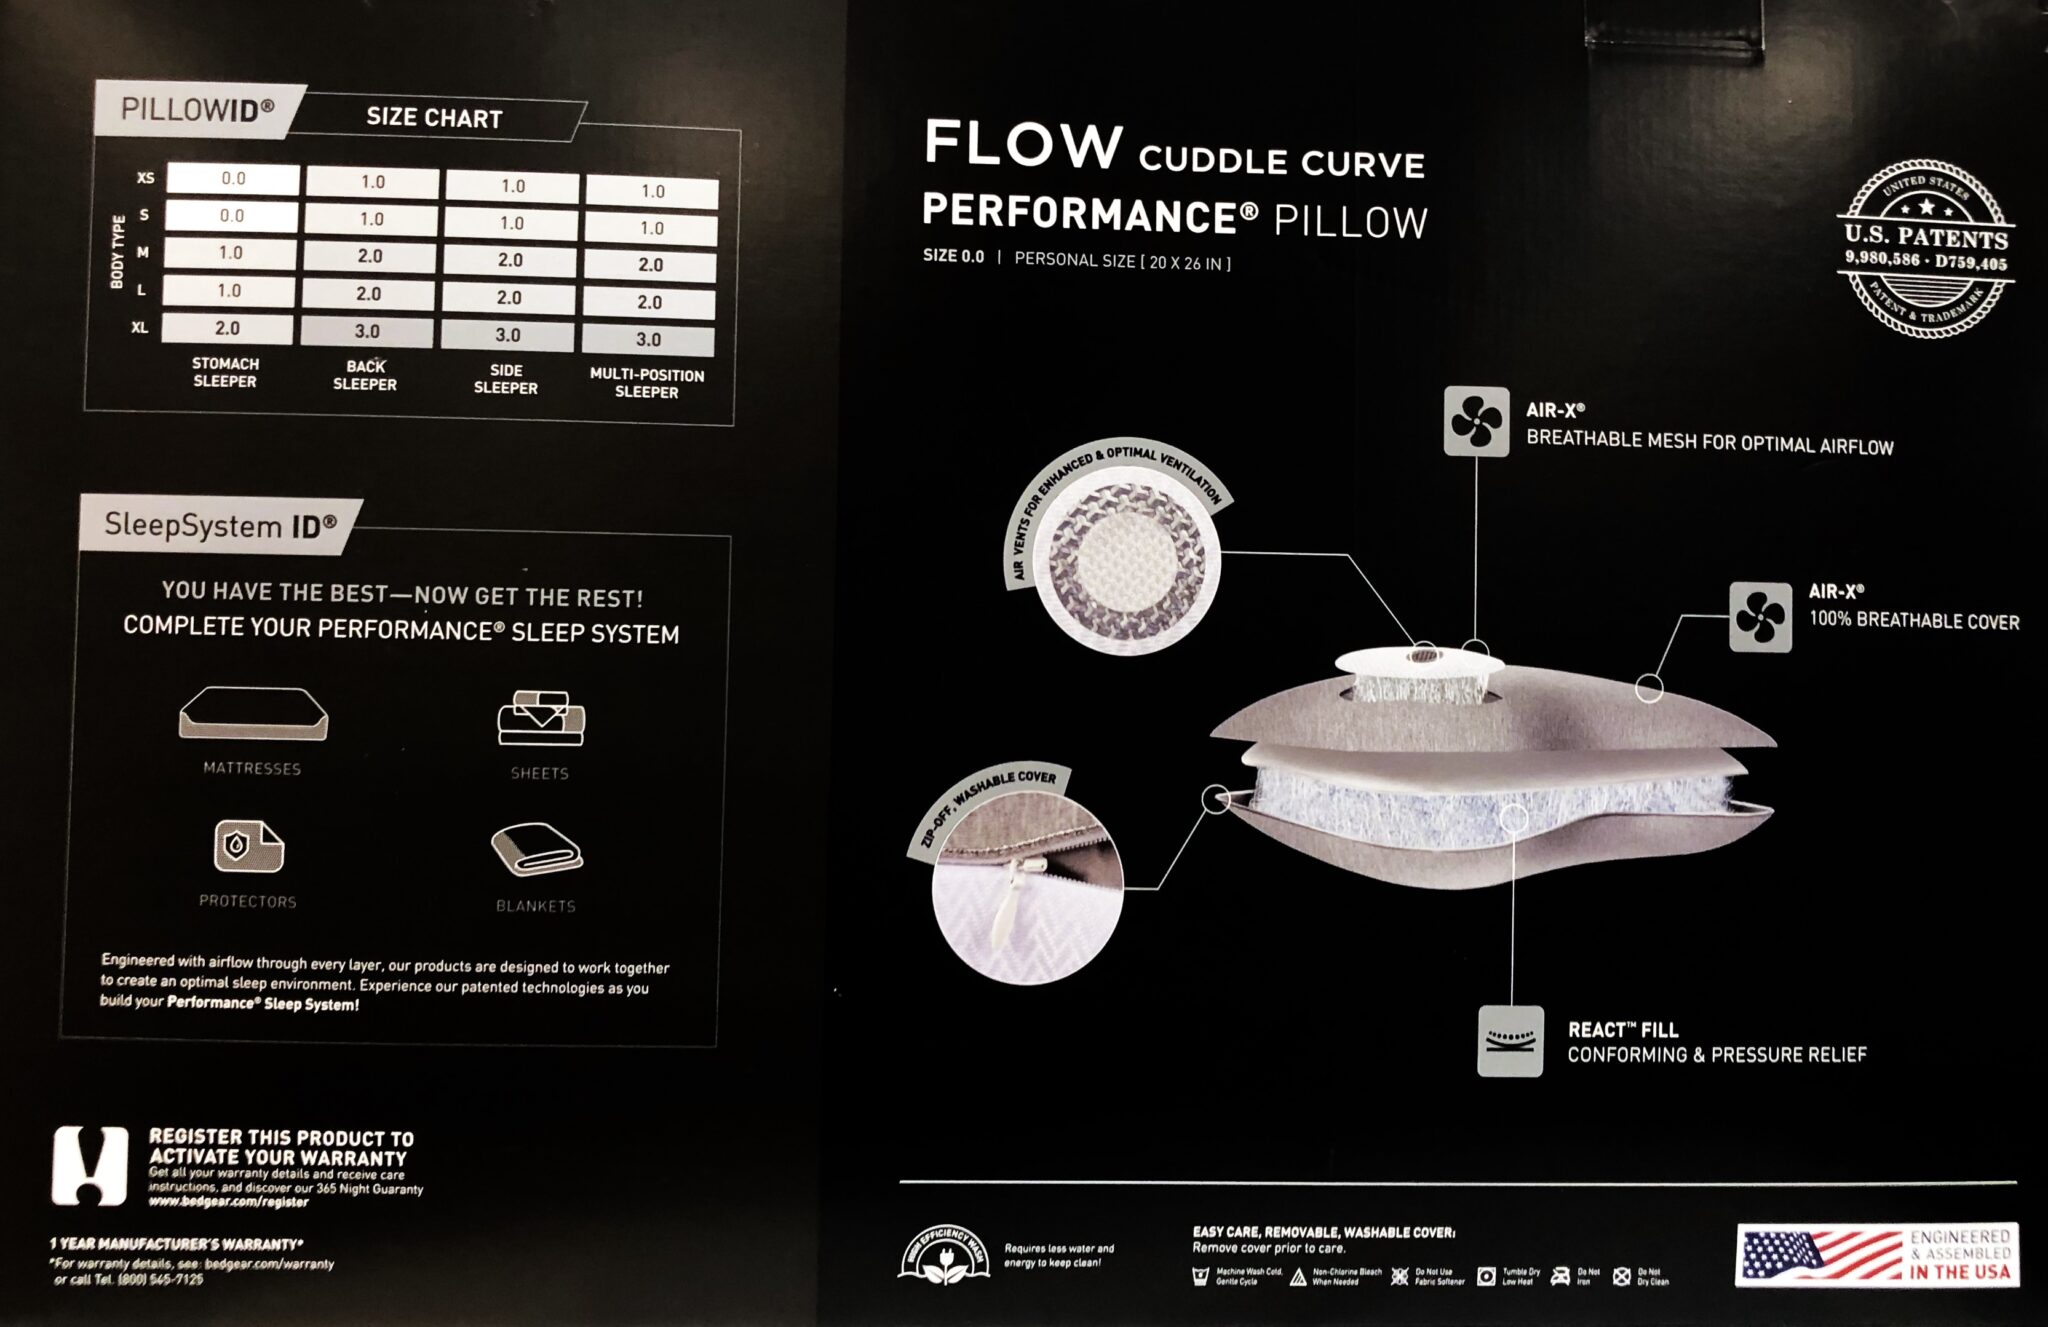 Flow Cuddle 0.0 Pillow